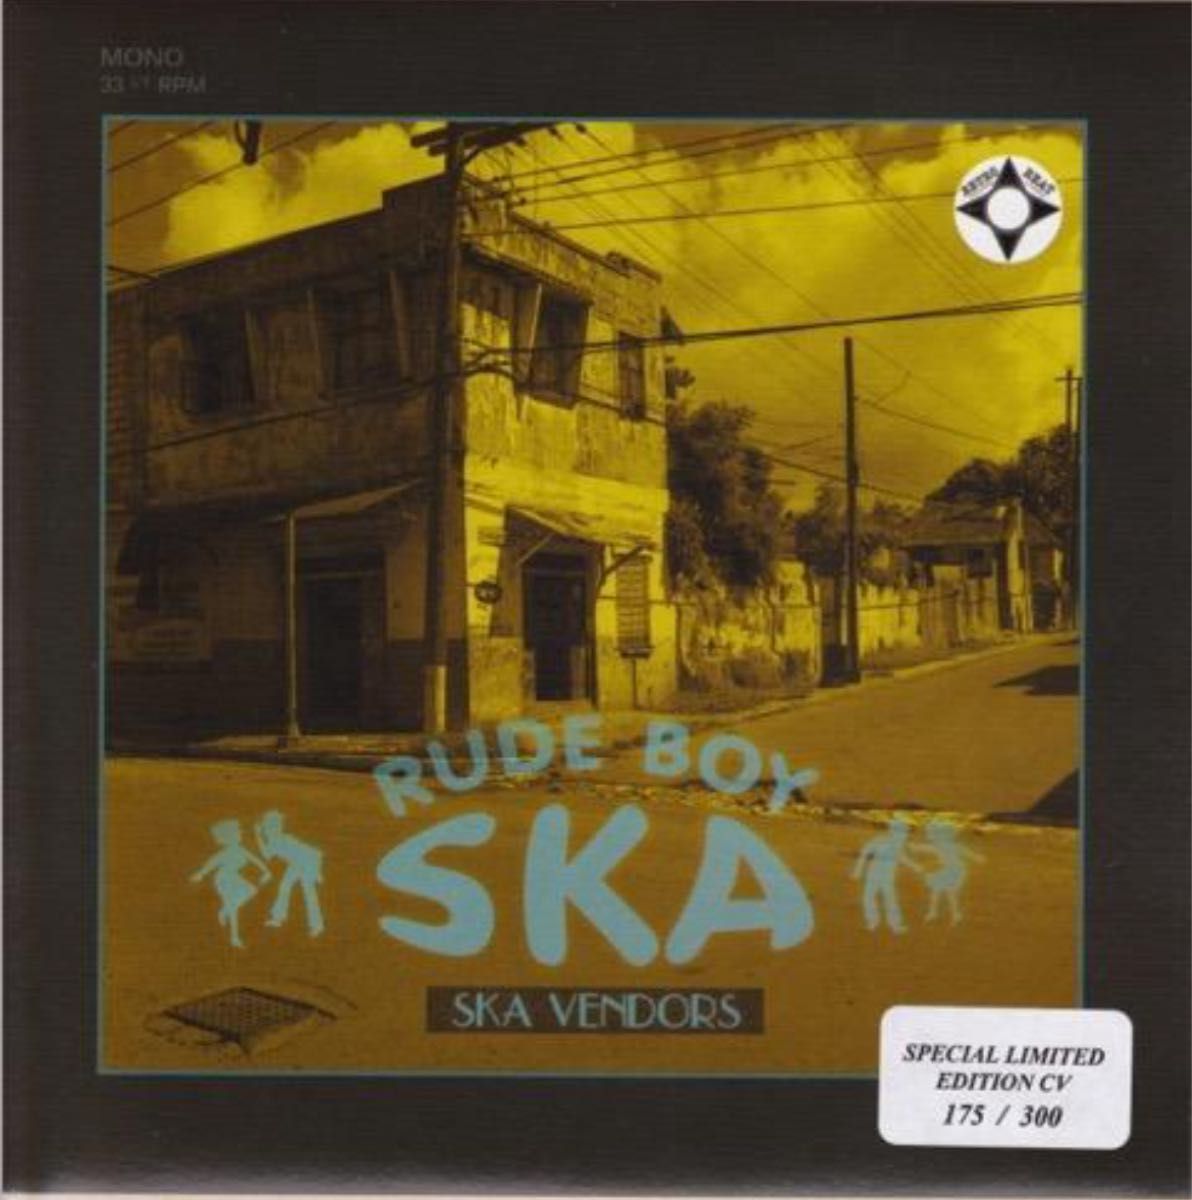 Ska Vendors - Rude Boy Ska (Retro Beat)